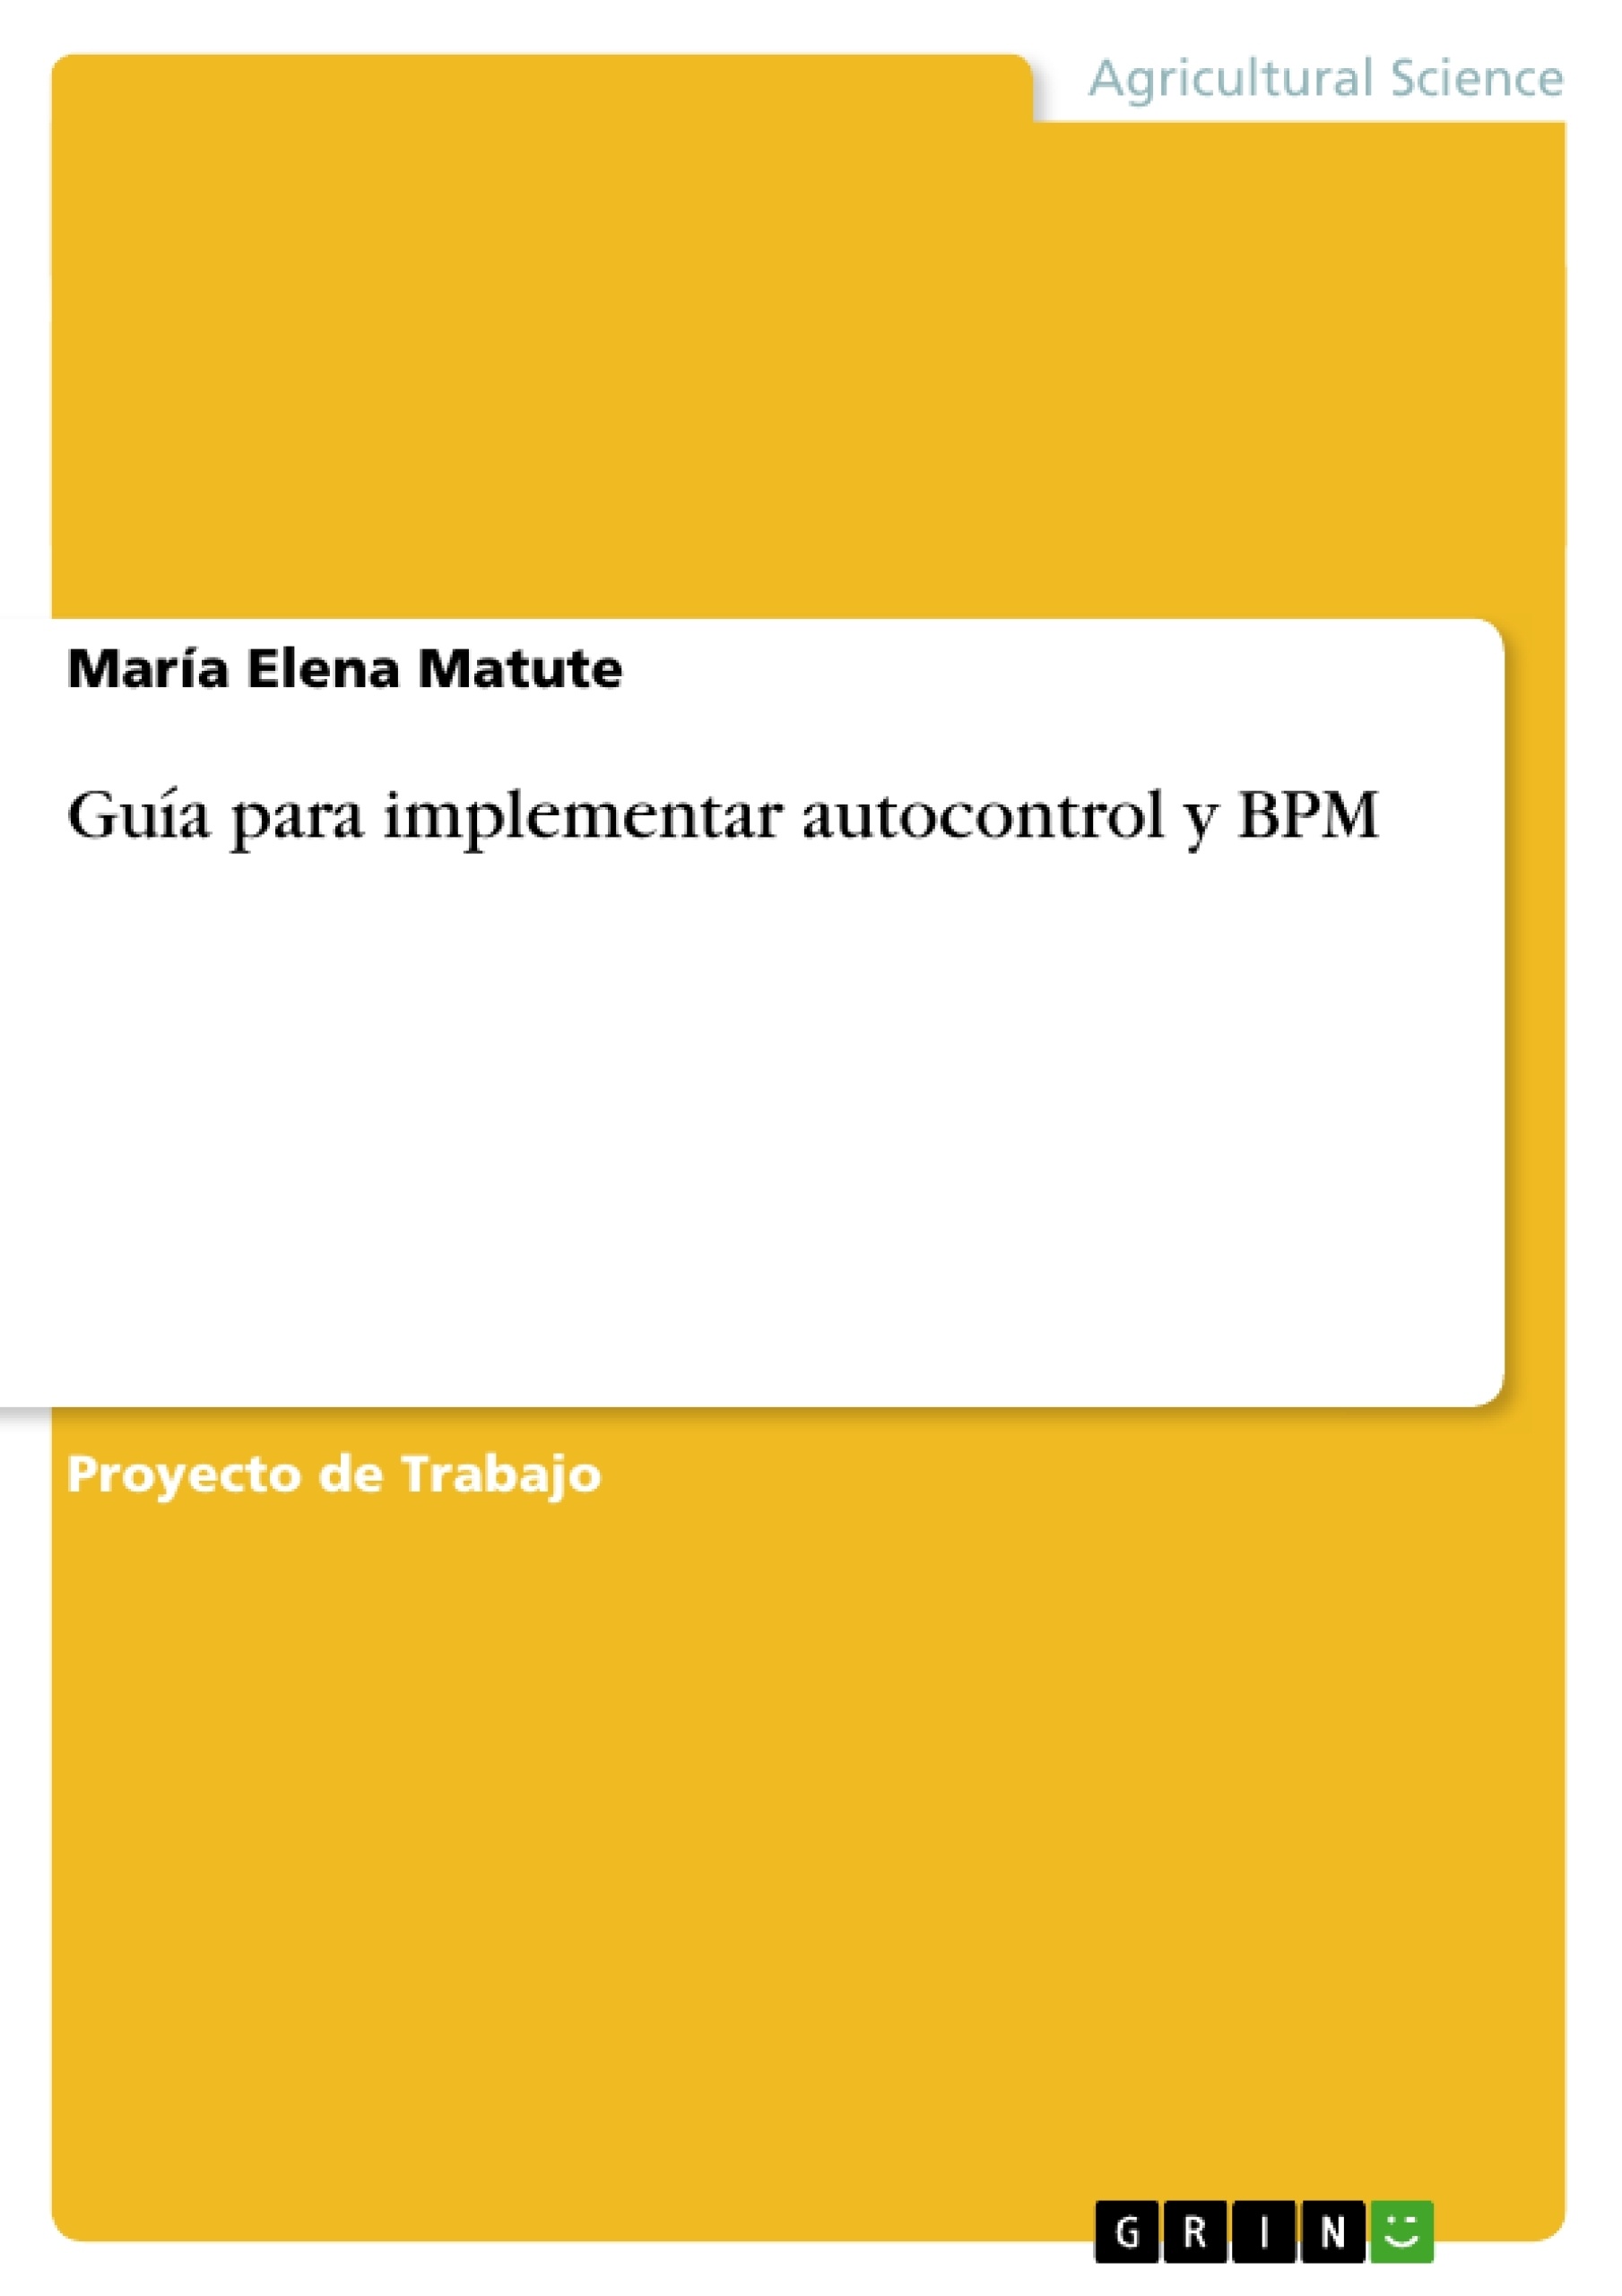 Title: Guía para implementar autocontrol y BPM